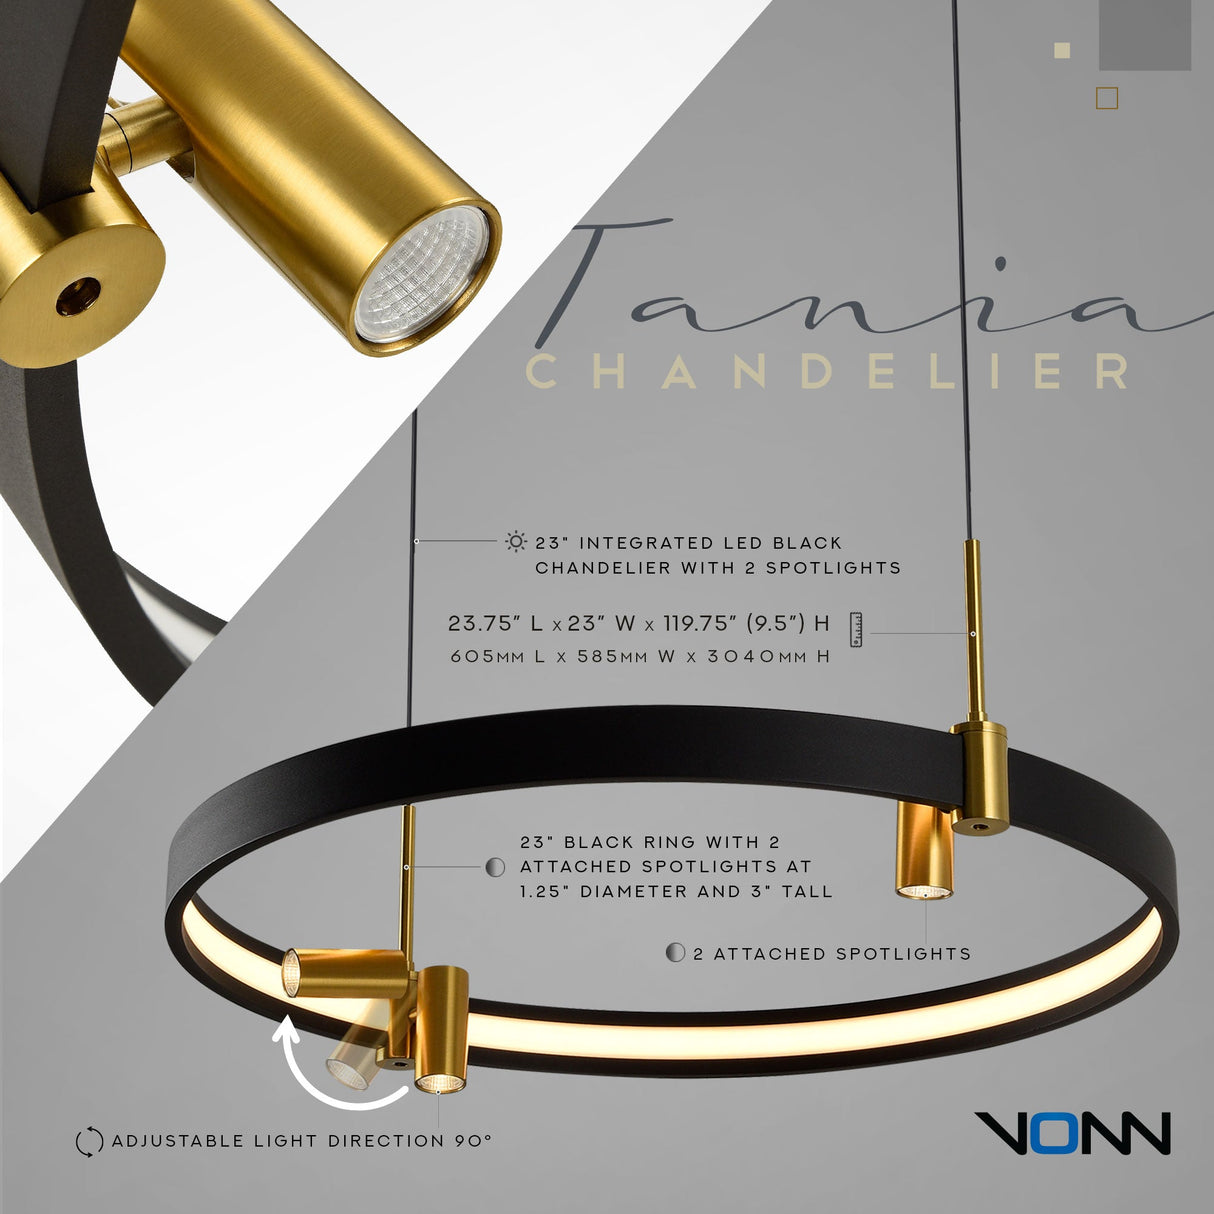 VONN Tania VMC33223BL 23" 100-277V Integrated LED ETL Certified Pendant, Height Adjustable Chandelier, Black